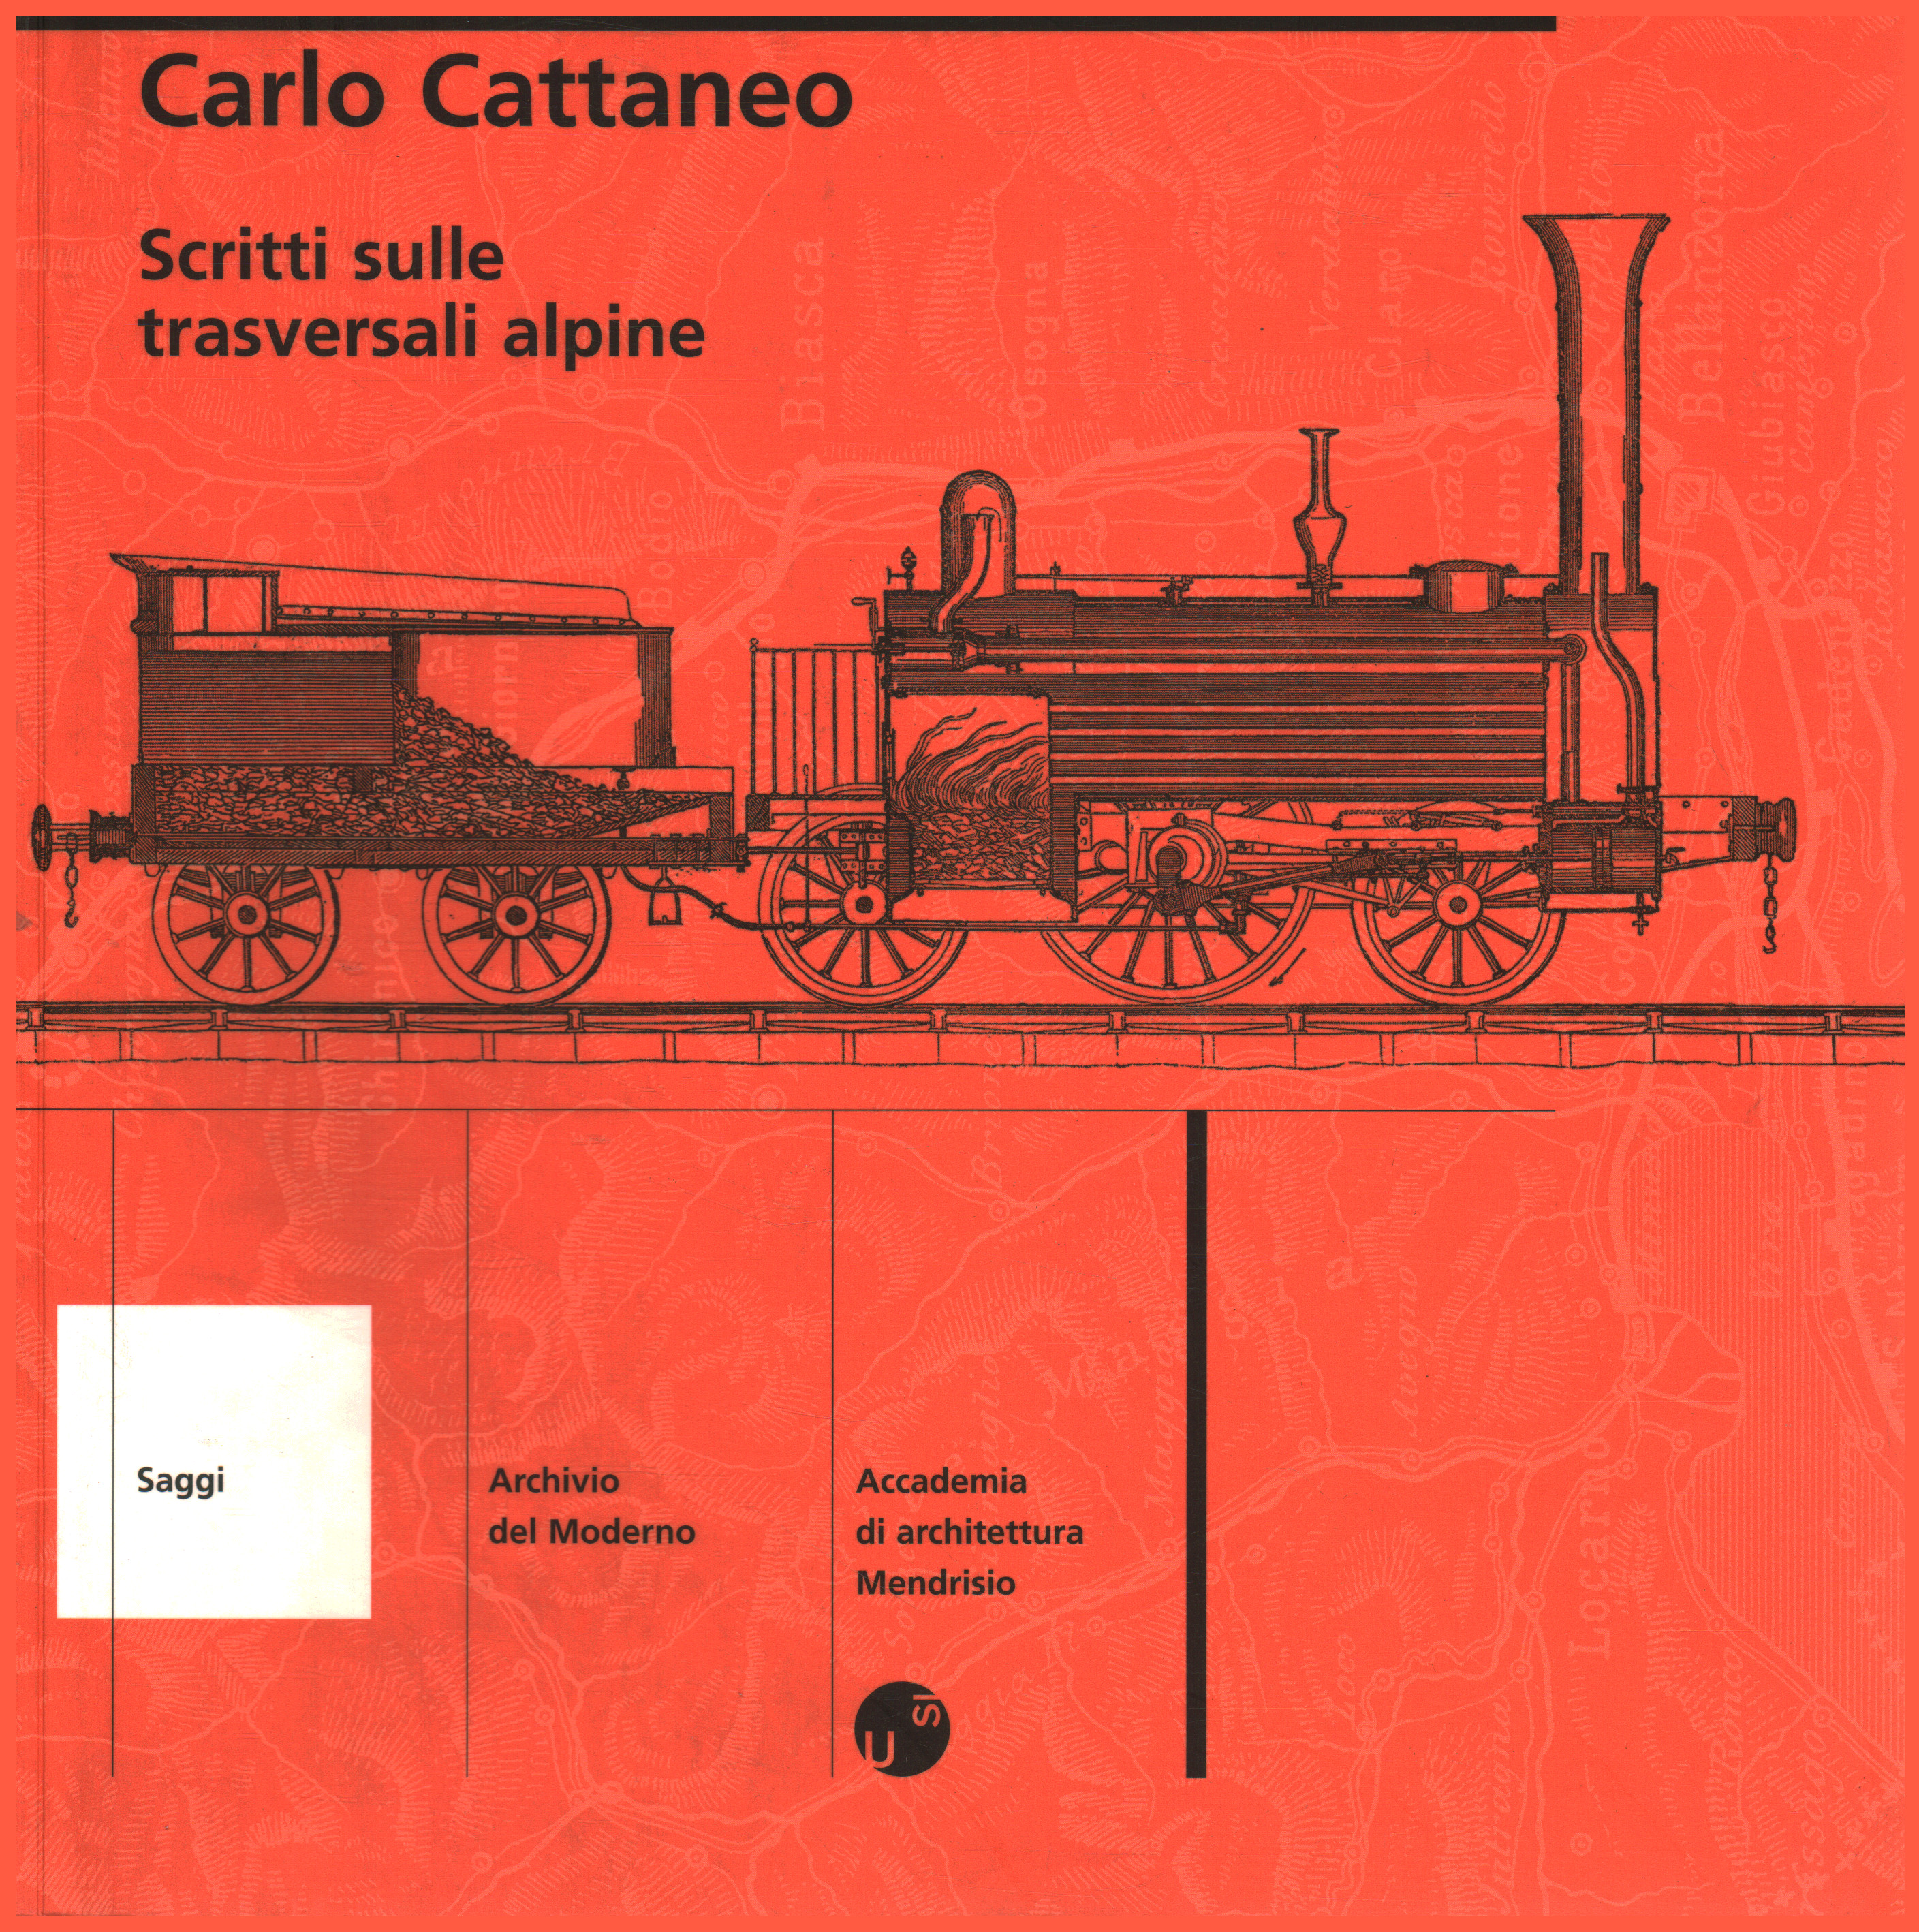 Written on Alpine crossways, Carlo Cattaneo